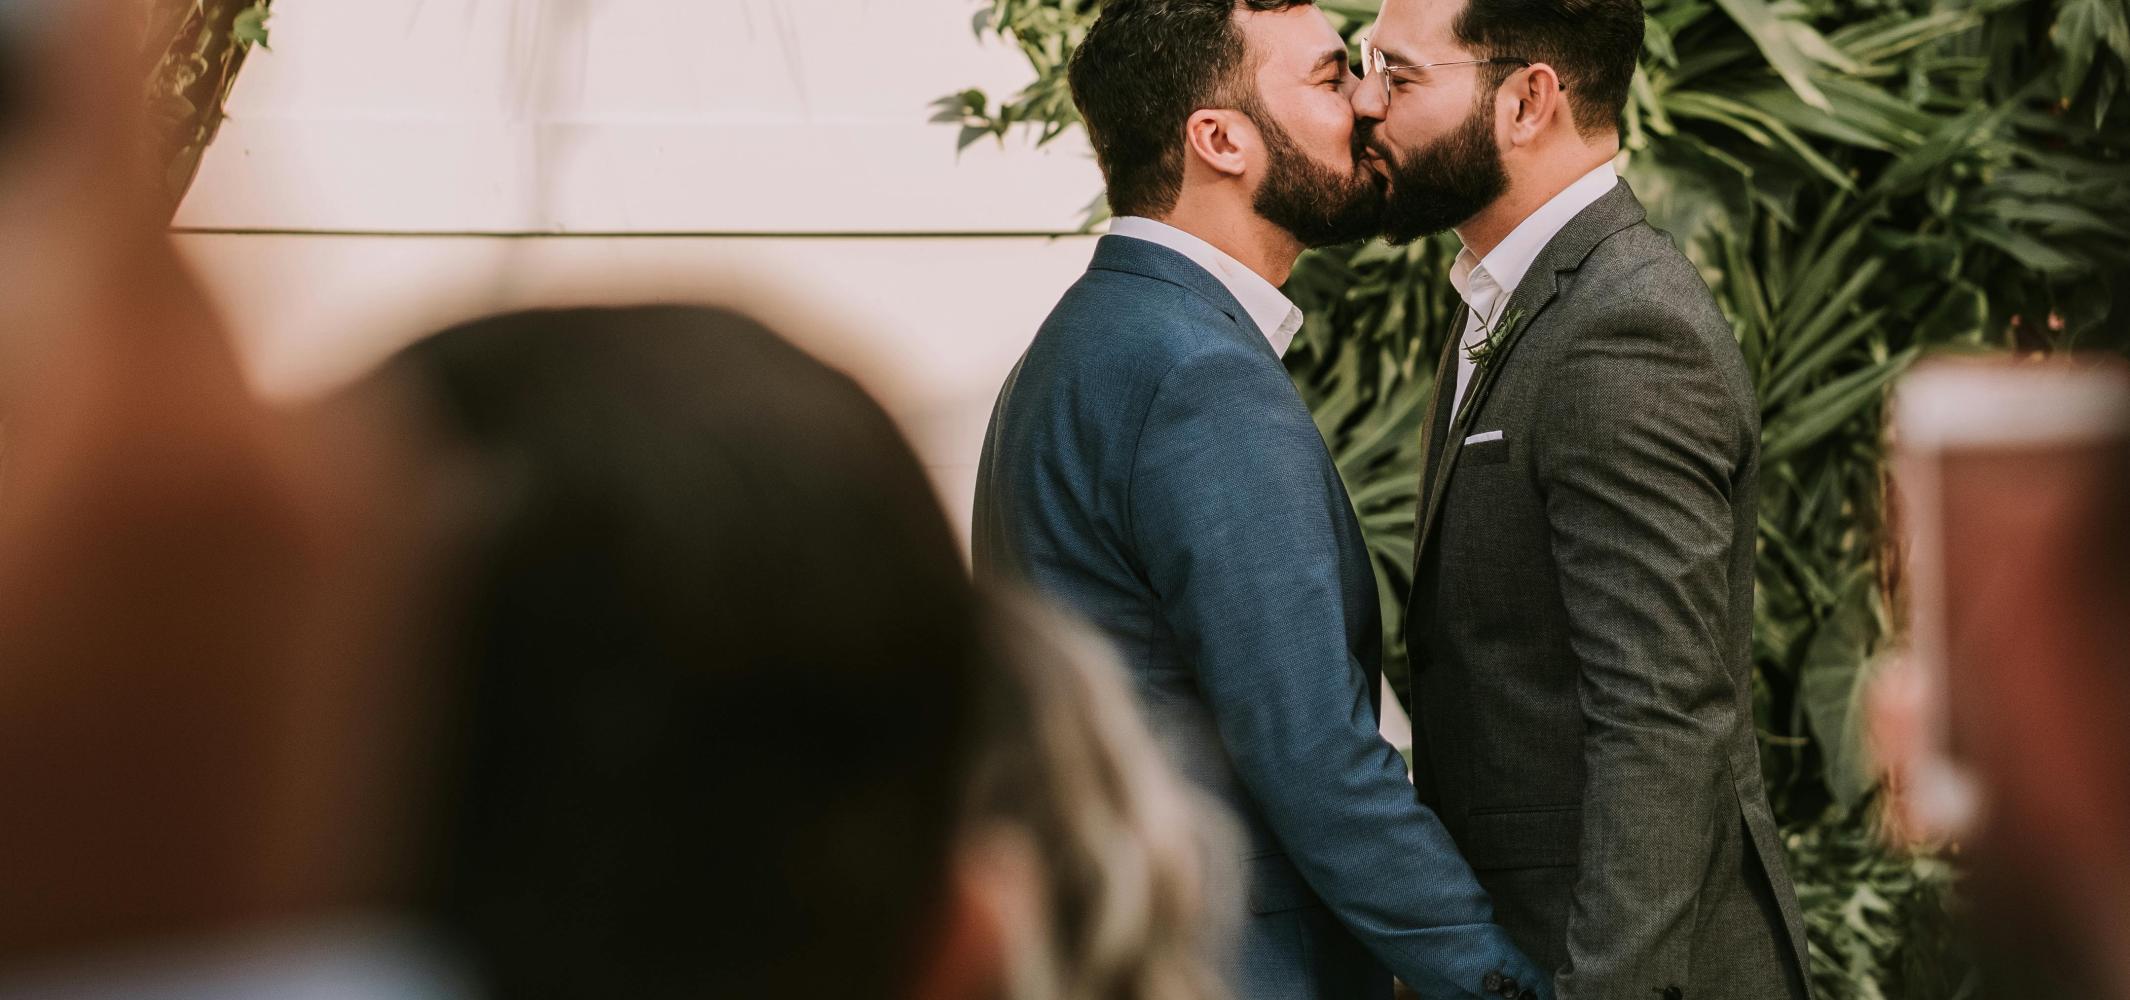 Opposite Sex Civil Partnerships Legal From 2nd December 2019 6061